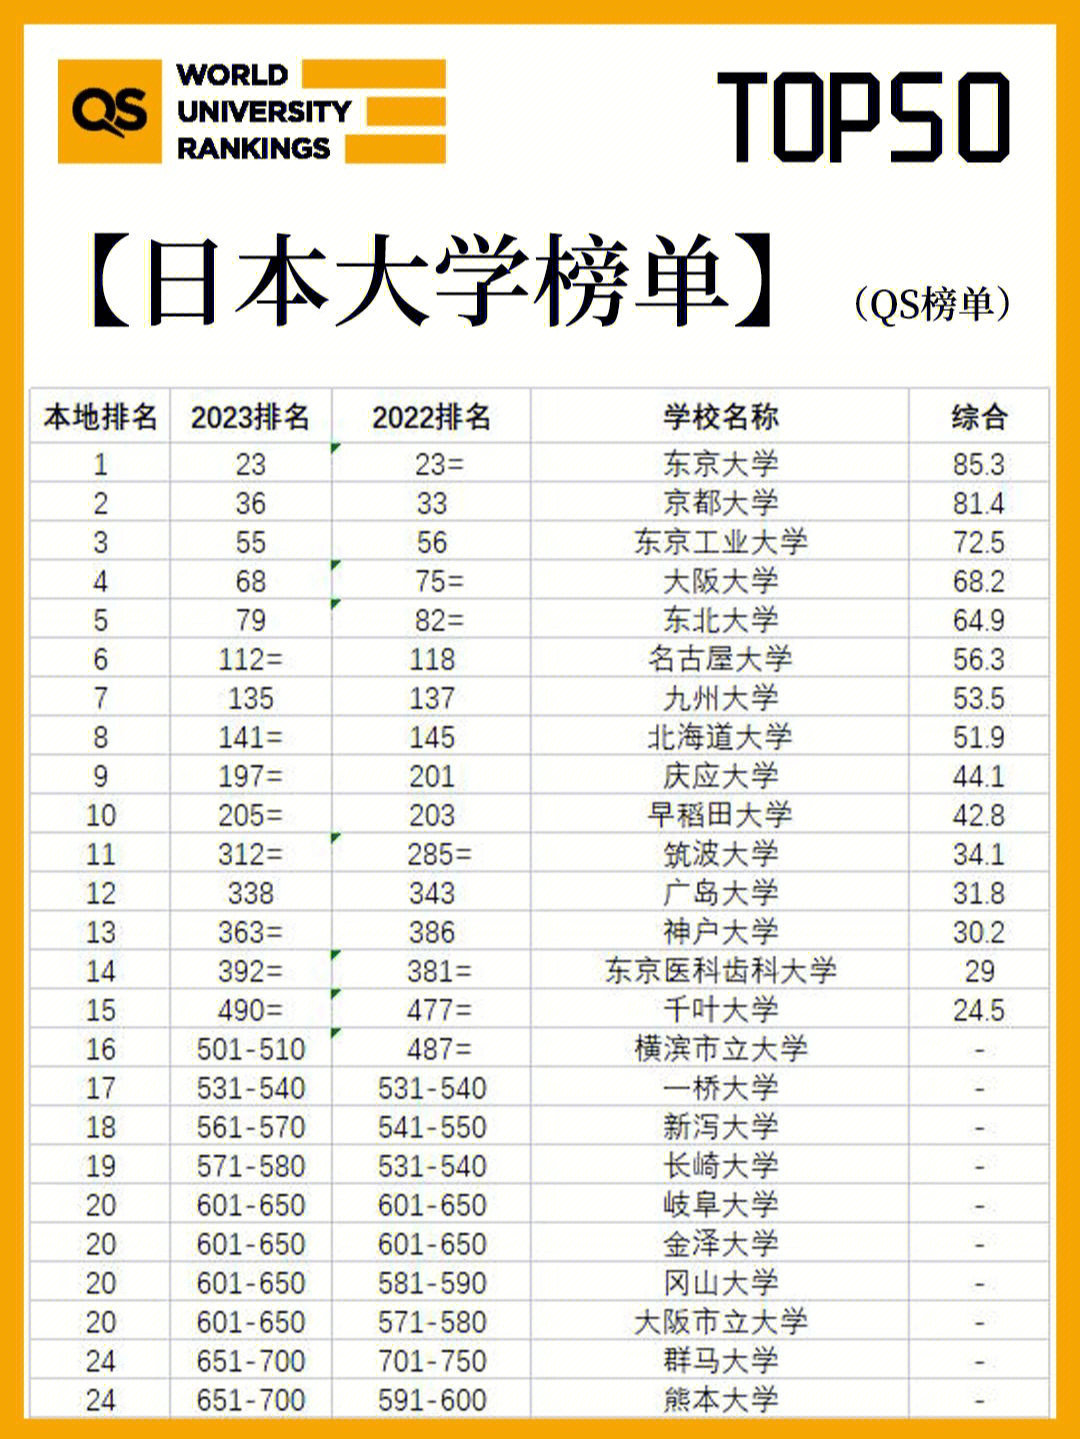 其中qs世界大学排名榜上50所,东京大学世界大学排名23名